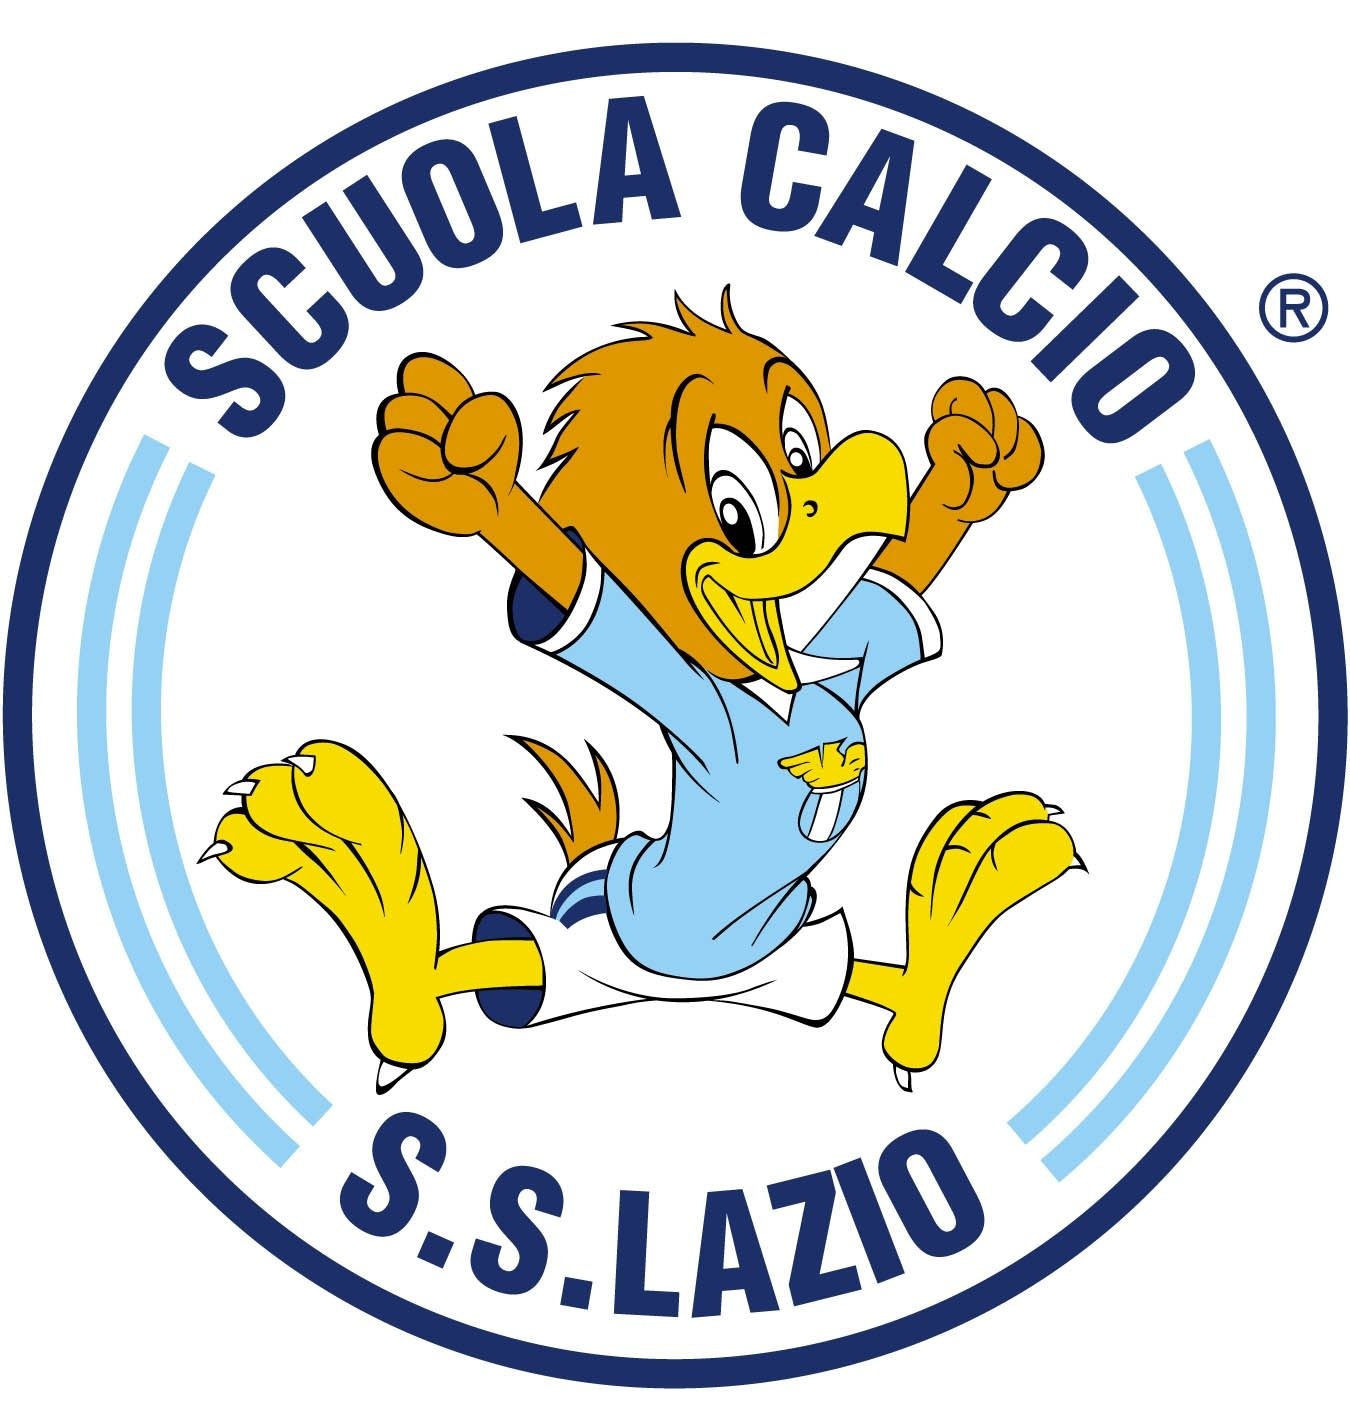 SS Lazio - Wikipedia